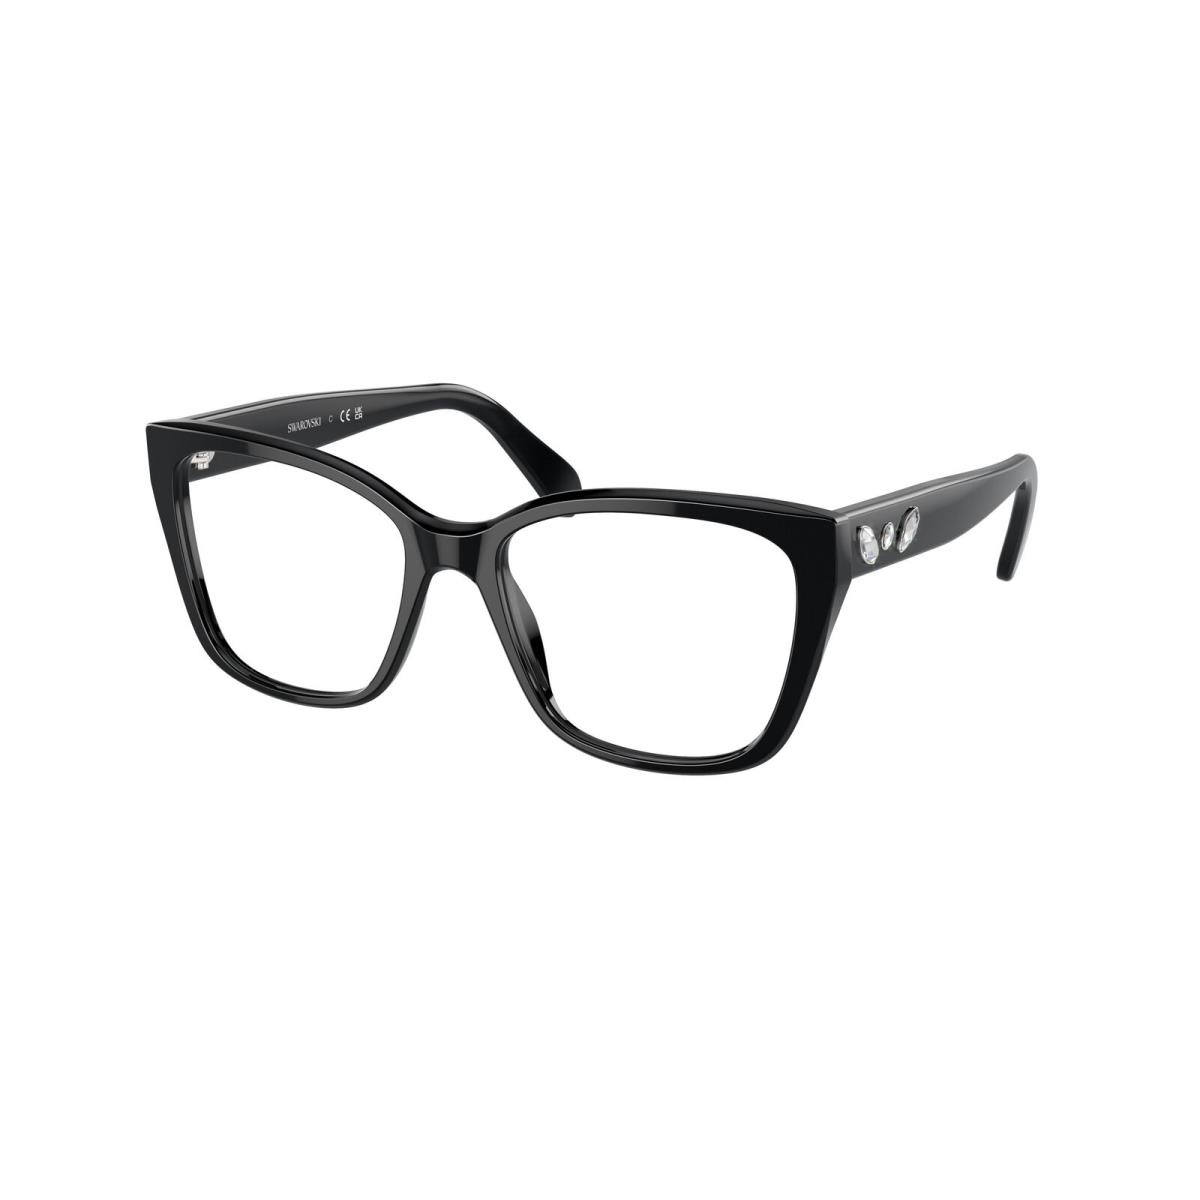 Swarovski SK 2008 Black 1001 Eyeglasses